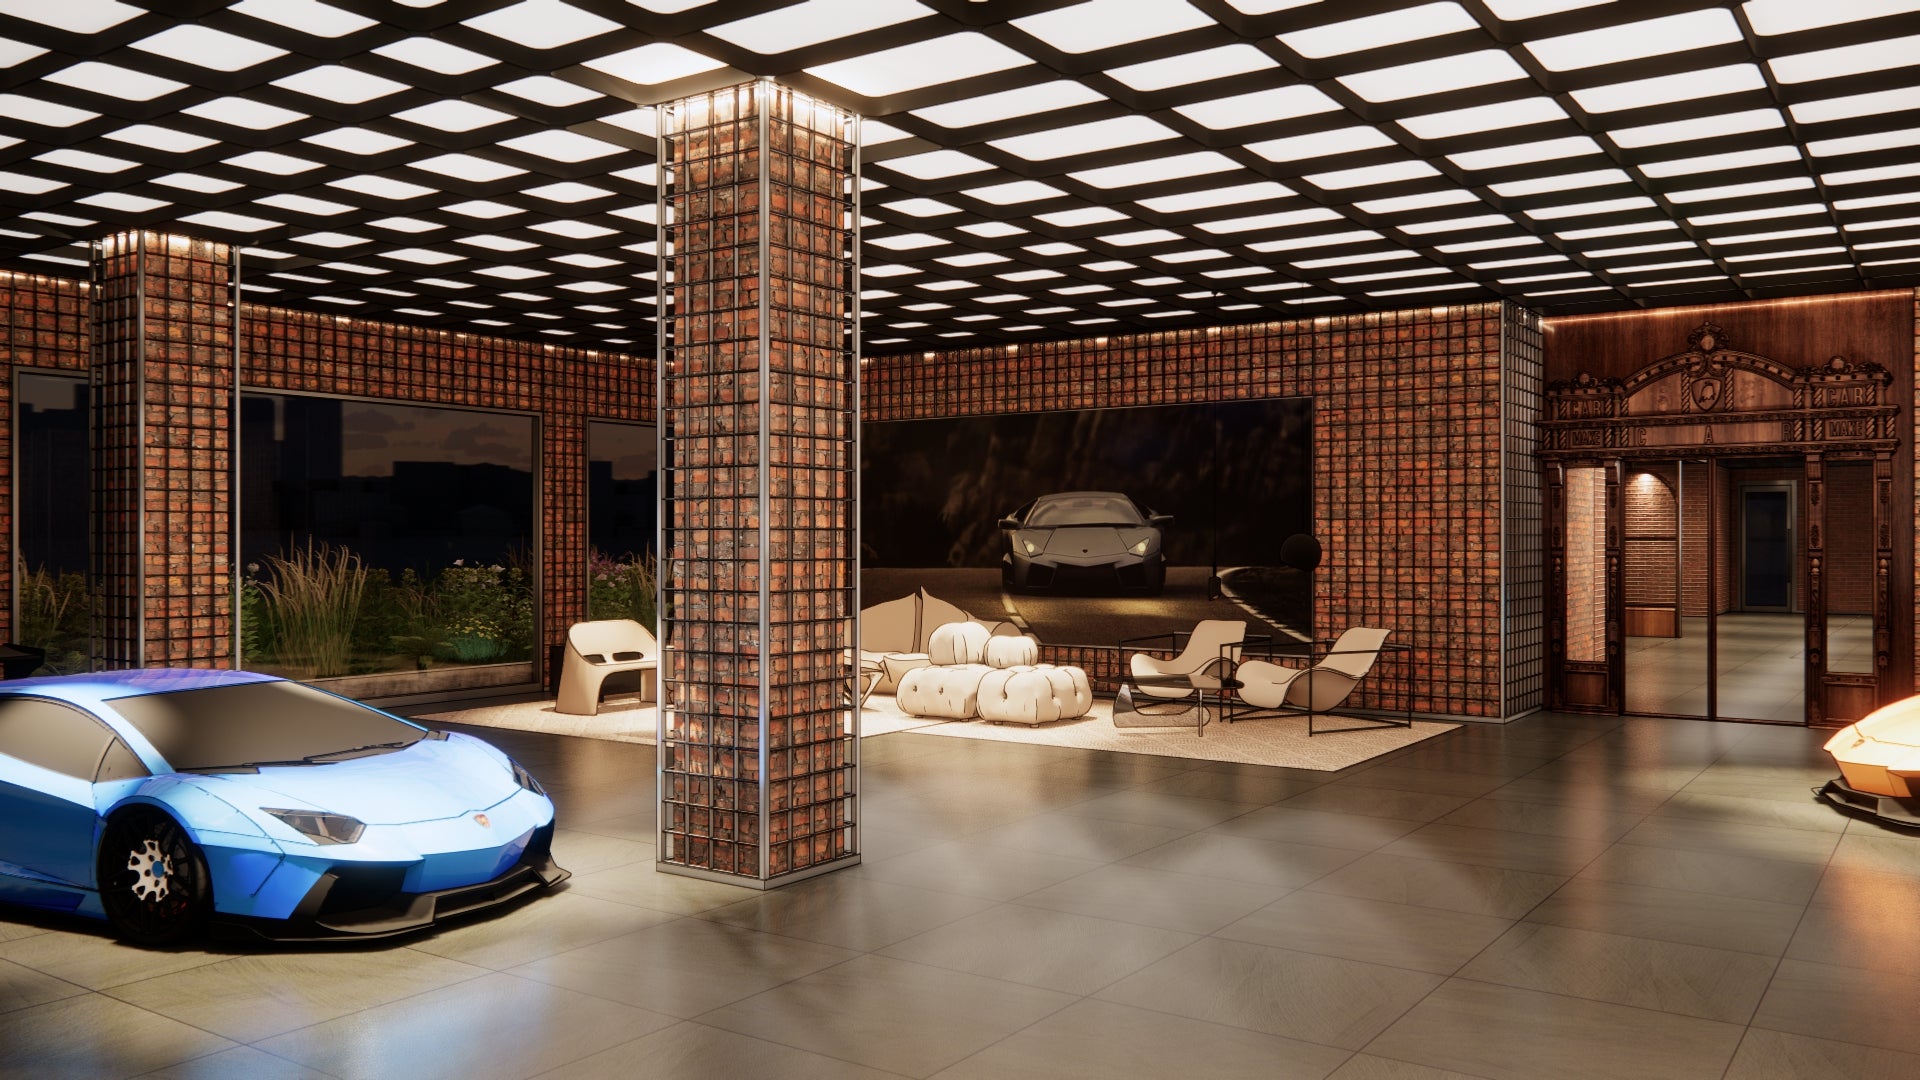 Lamborghini exhibition hall inside Hankook-Tire